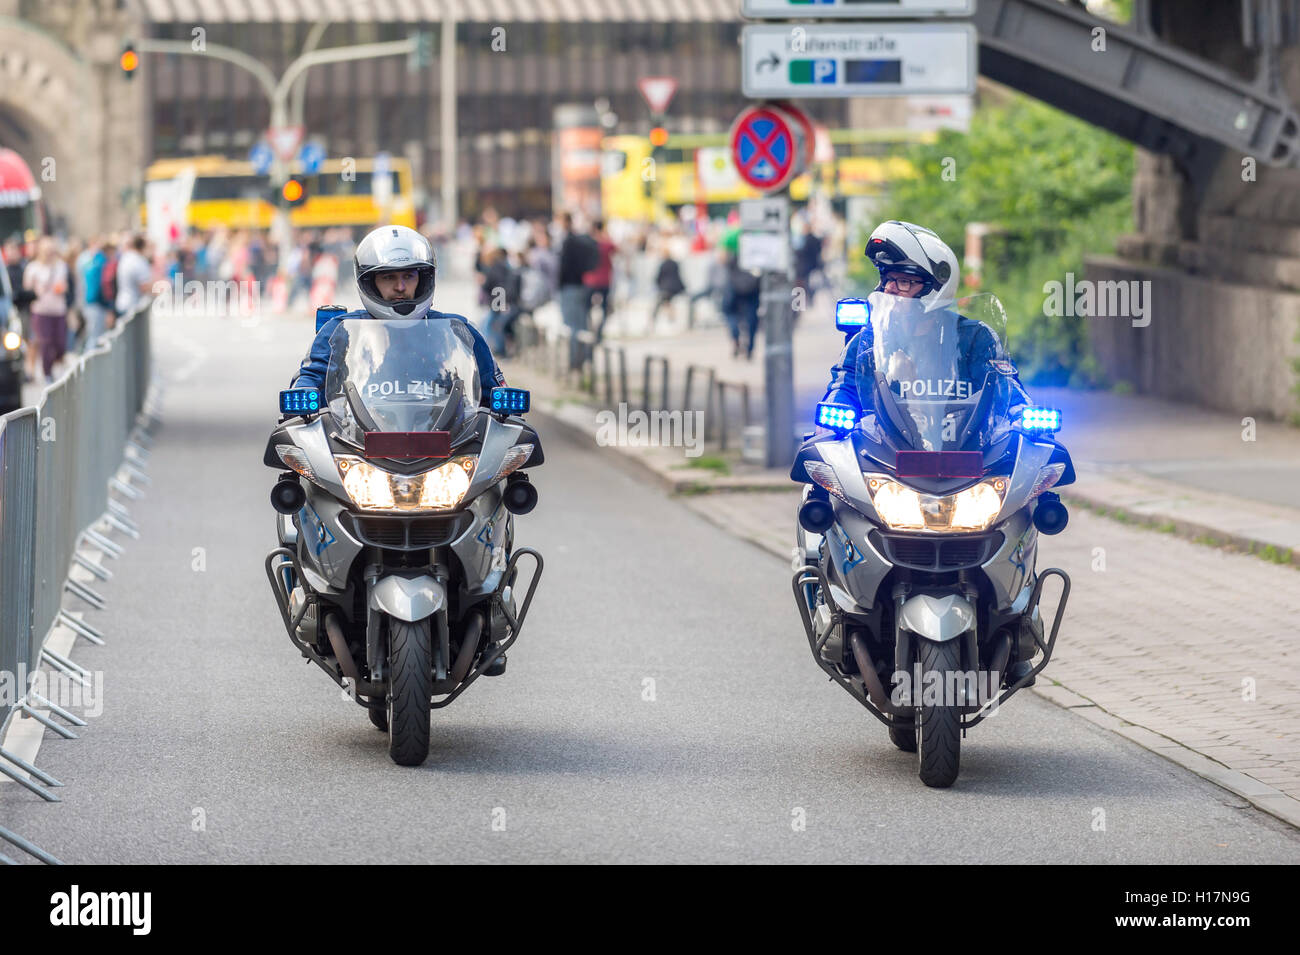 Polizei auf Motorrädern, Hamburg, Deutschland Stockfoto